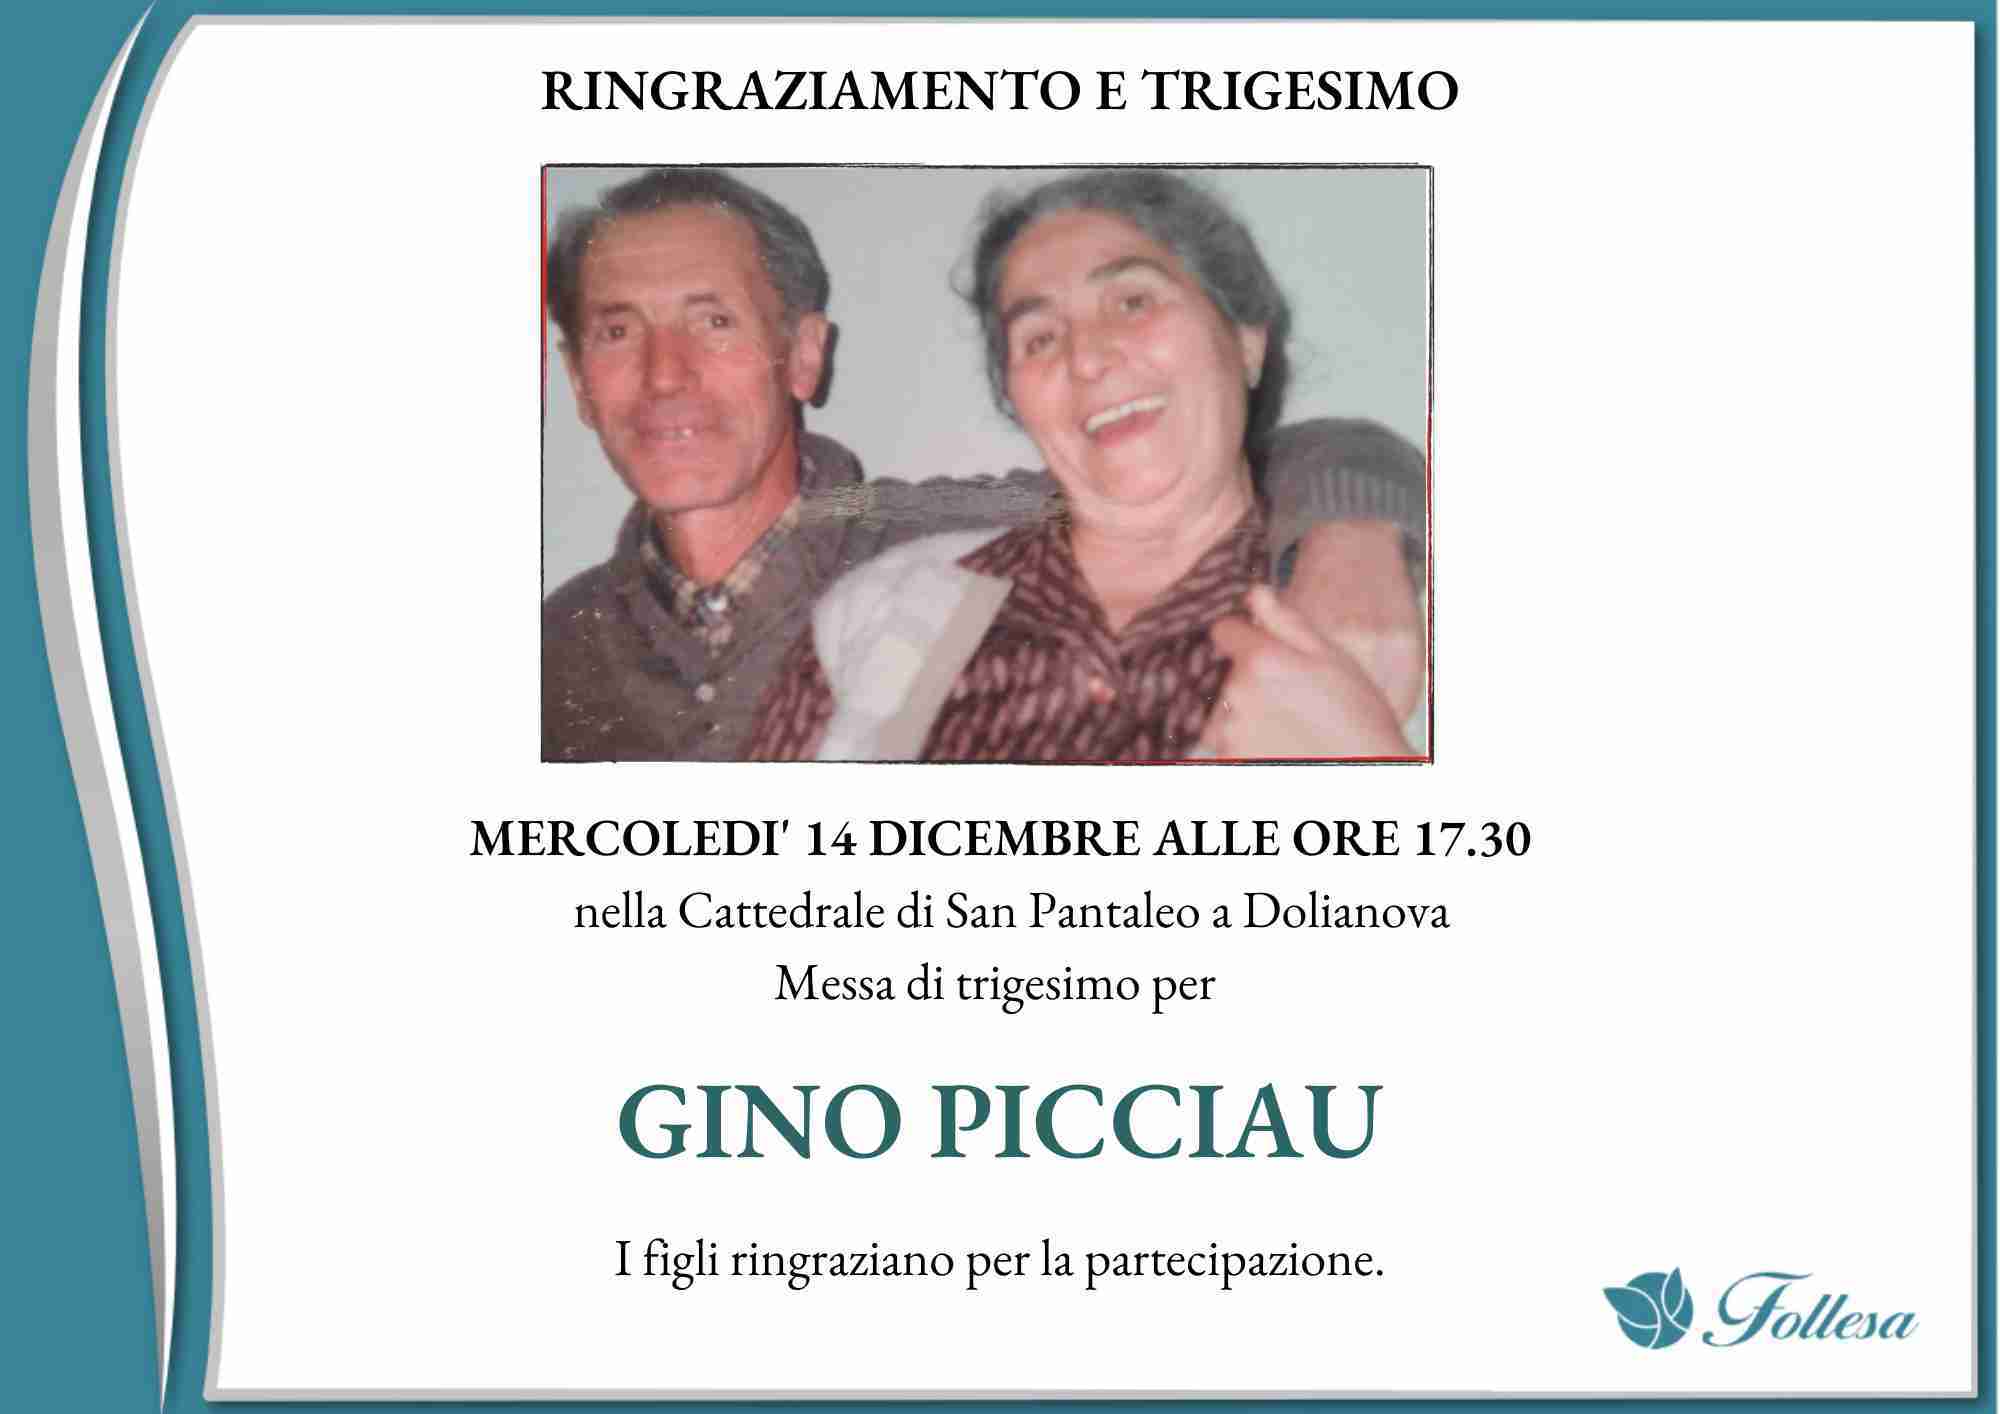 Luigino Picciau